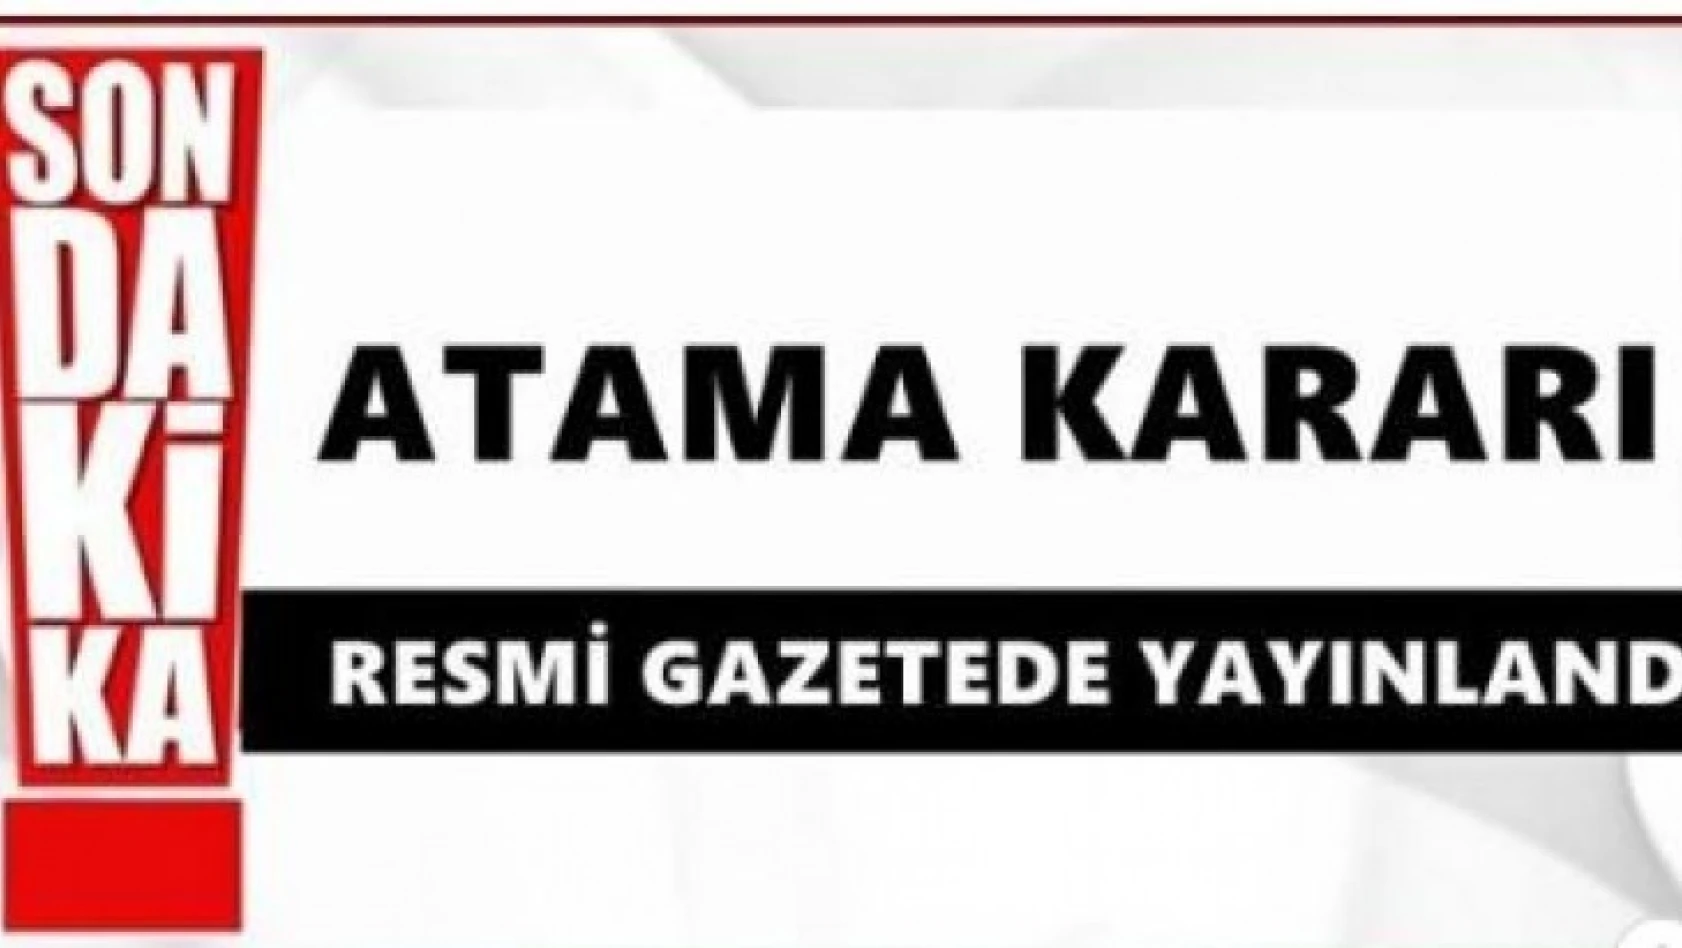 İl Müdürü Fuat Dursun Ankara'ya atandı